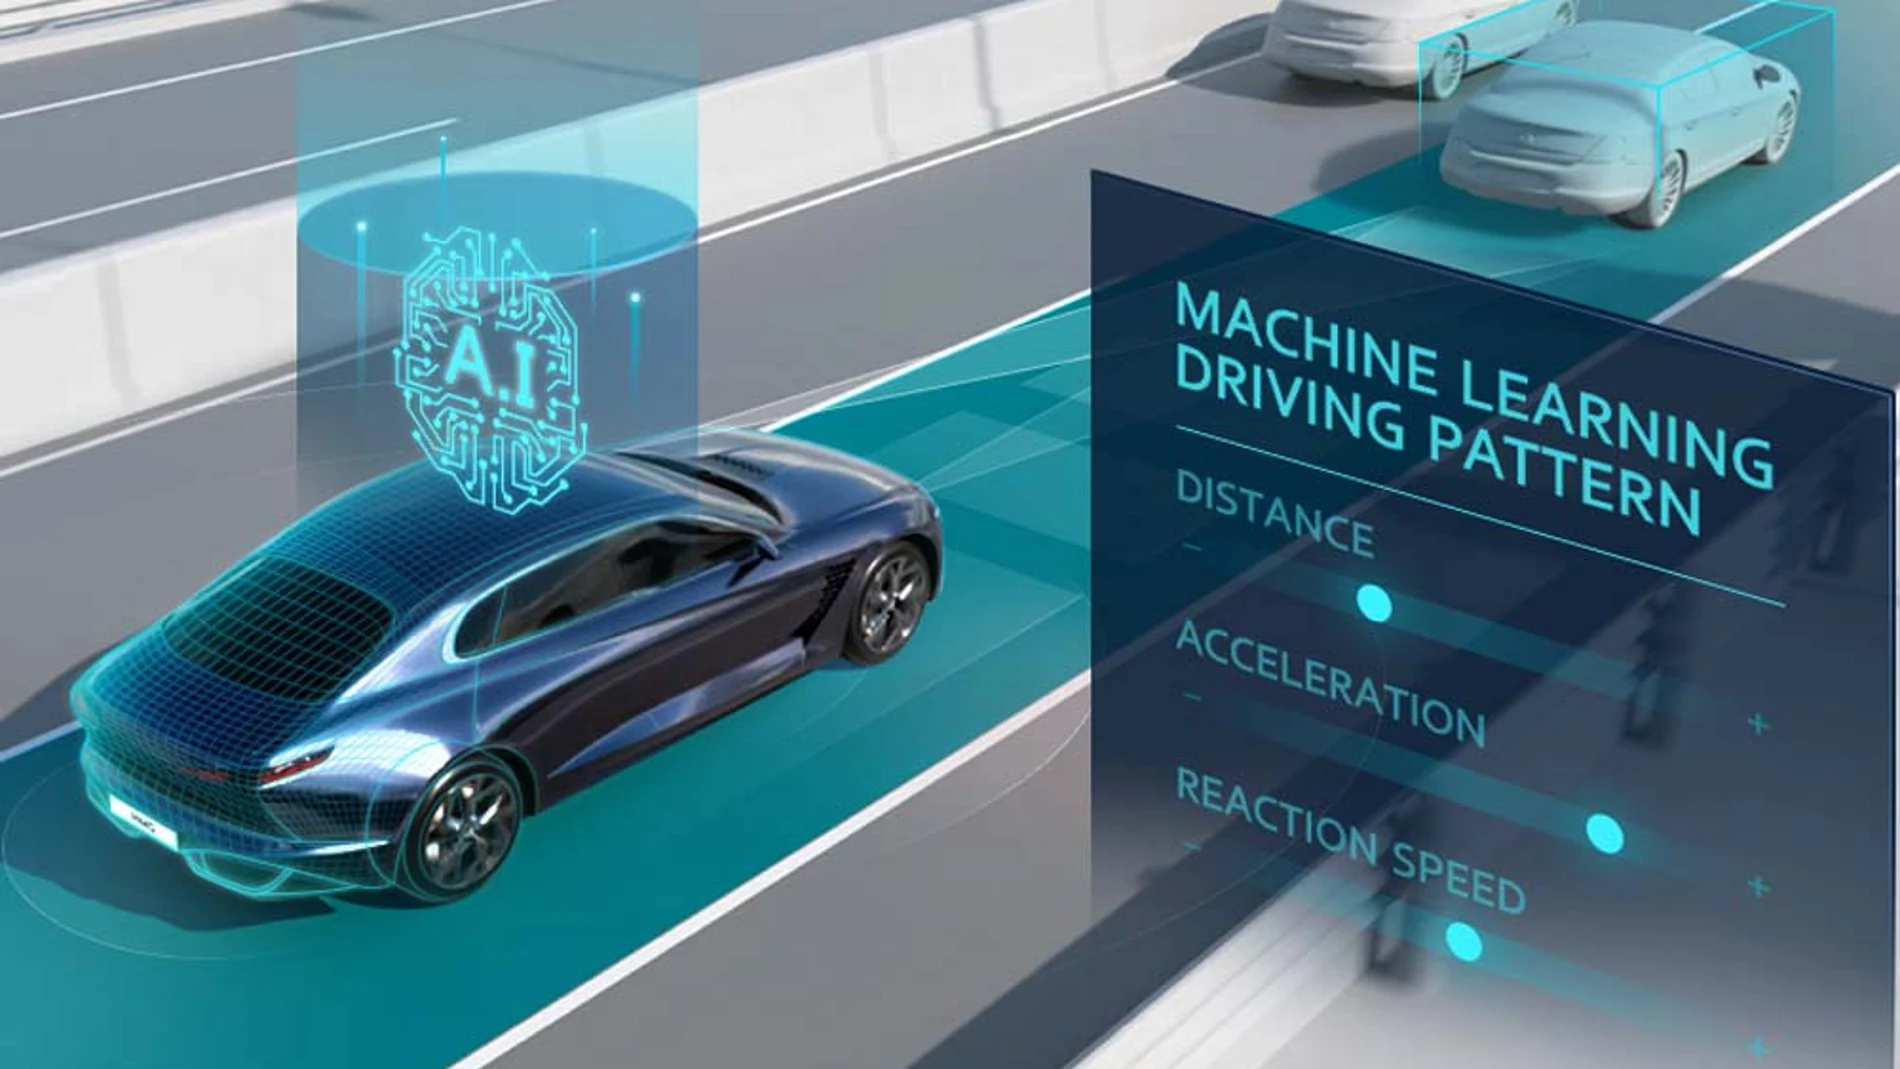 El SCC-ML desarrollado por Hyundai Motor Group añade inteligencia artificial que aprende los hábitos del conductor para mejorar la conducción automatizada.